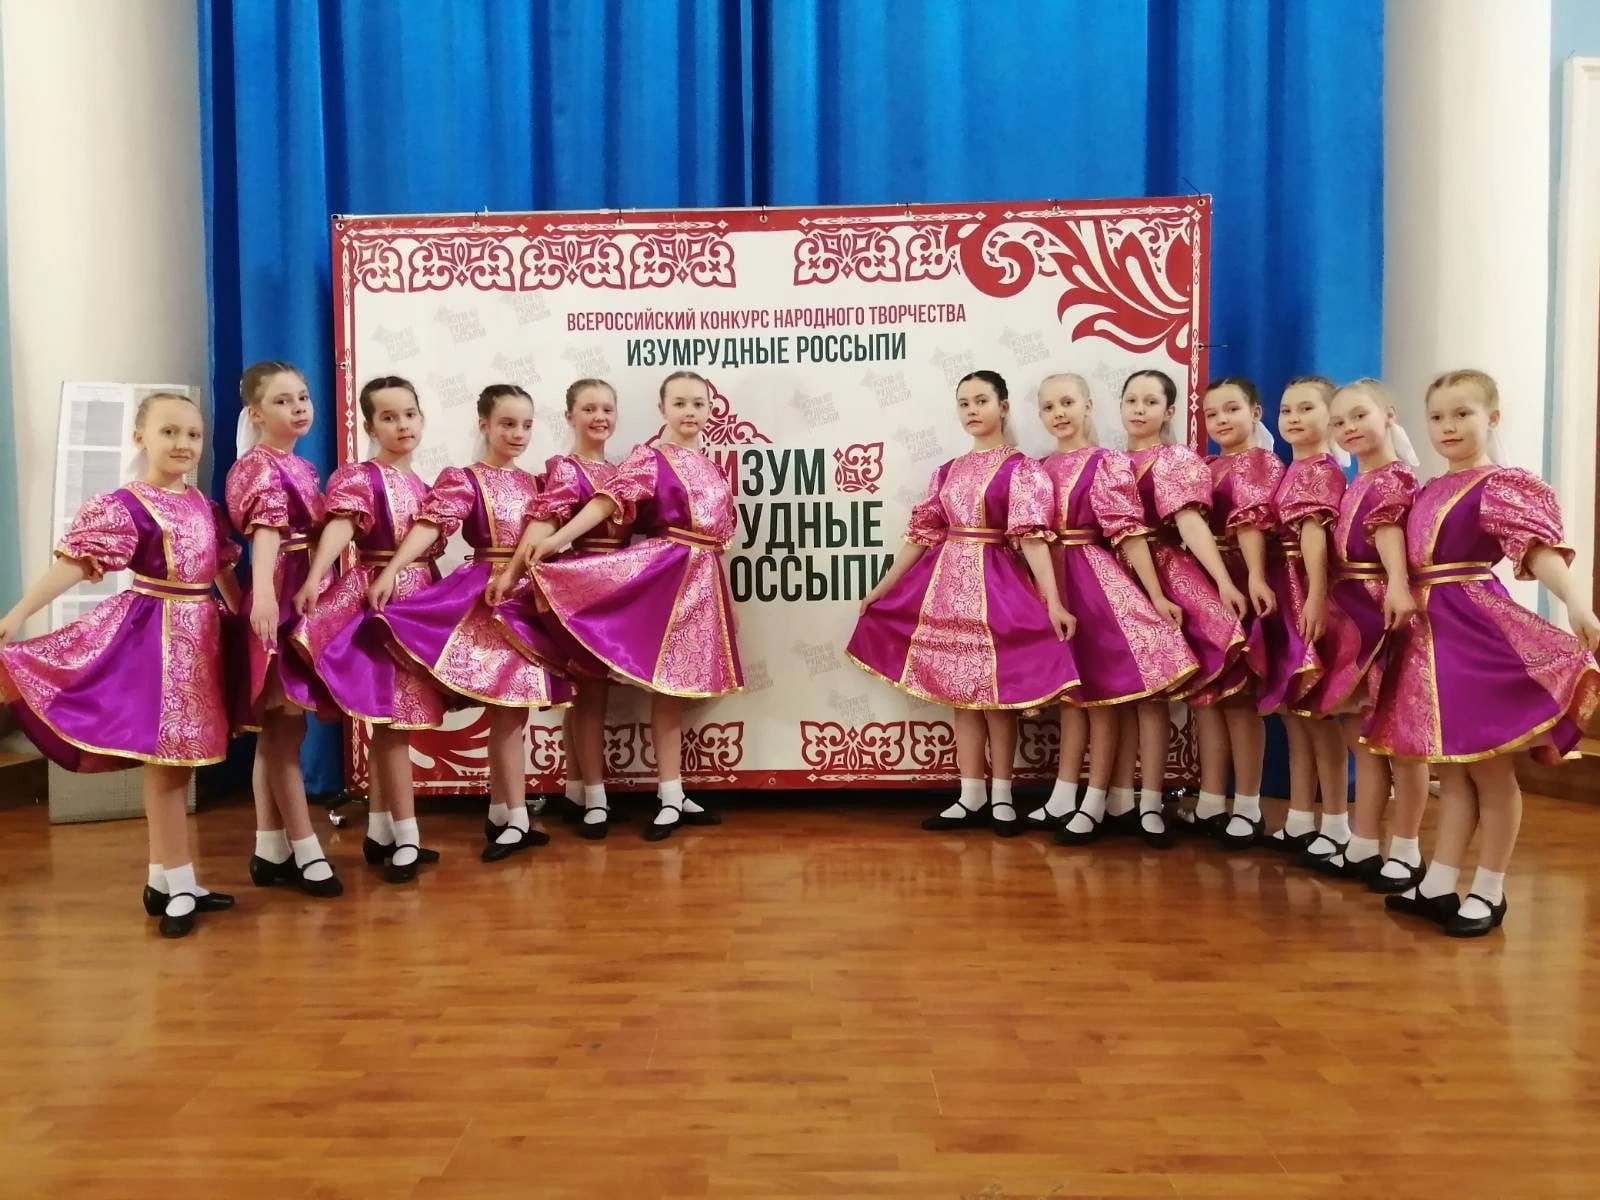 Ученики школы приняли участие в Всероссийском фестивале-конкурсе народного творчества «Изумрудные россыпи»